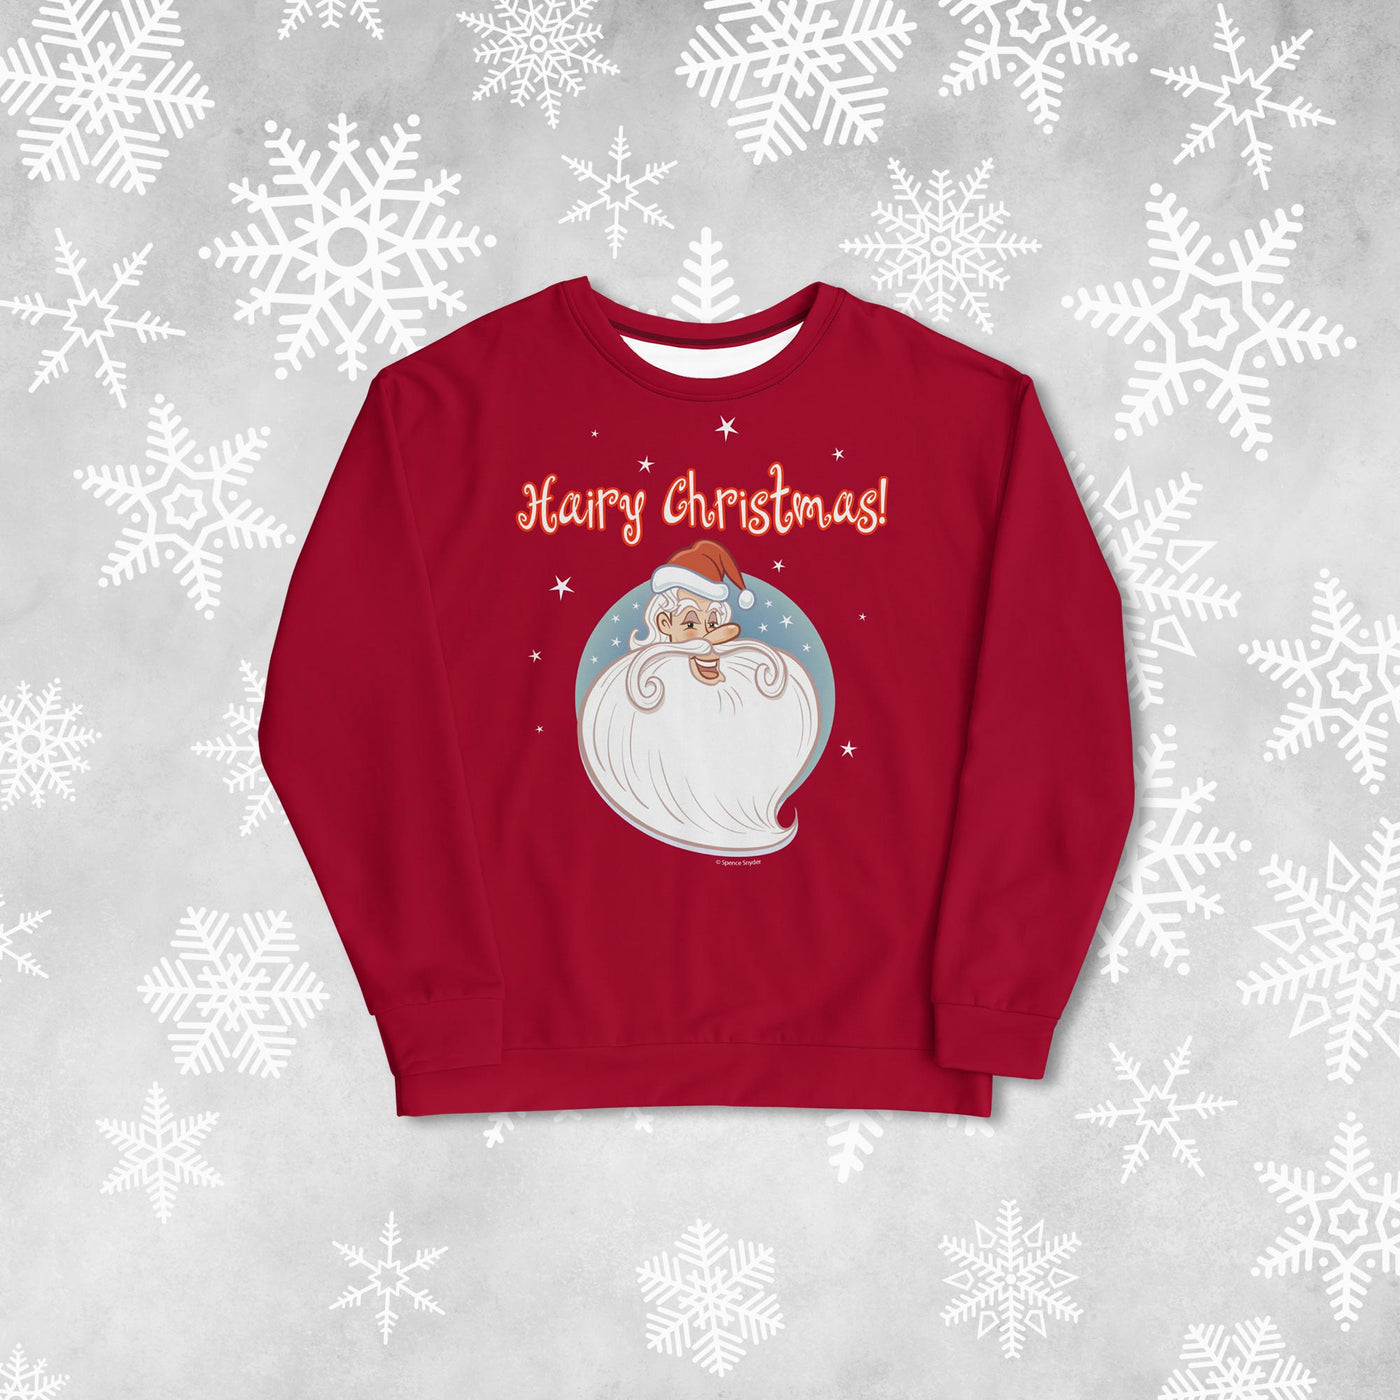 Hairy Christmas! - Sweatshirt